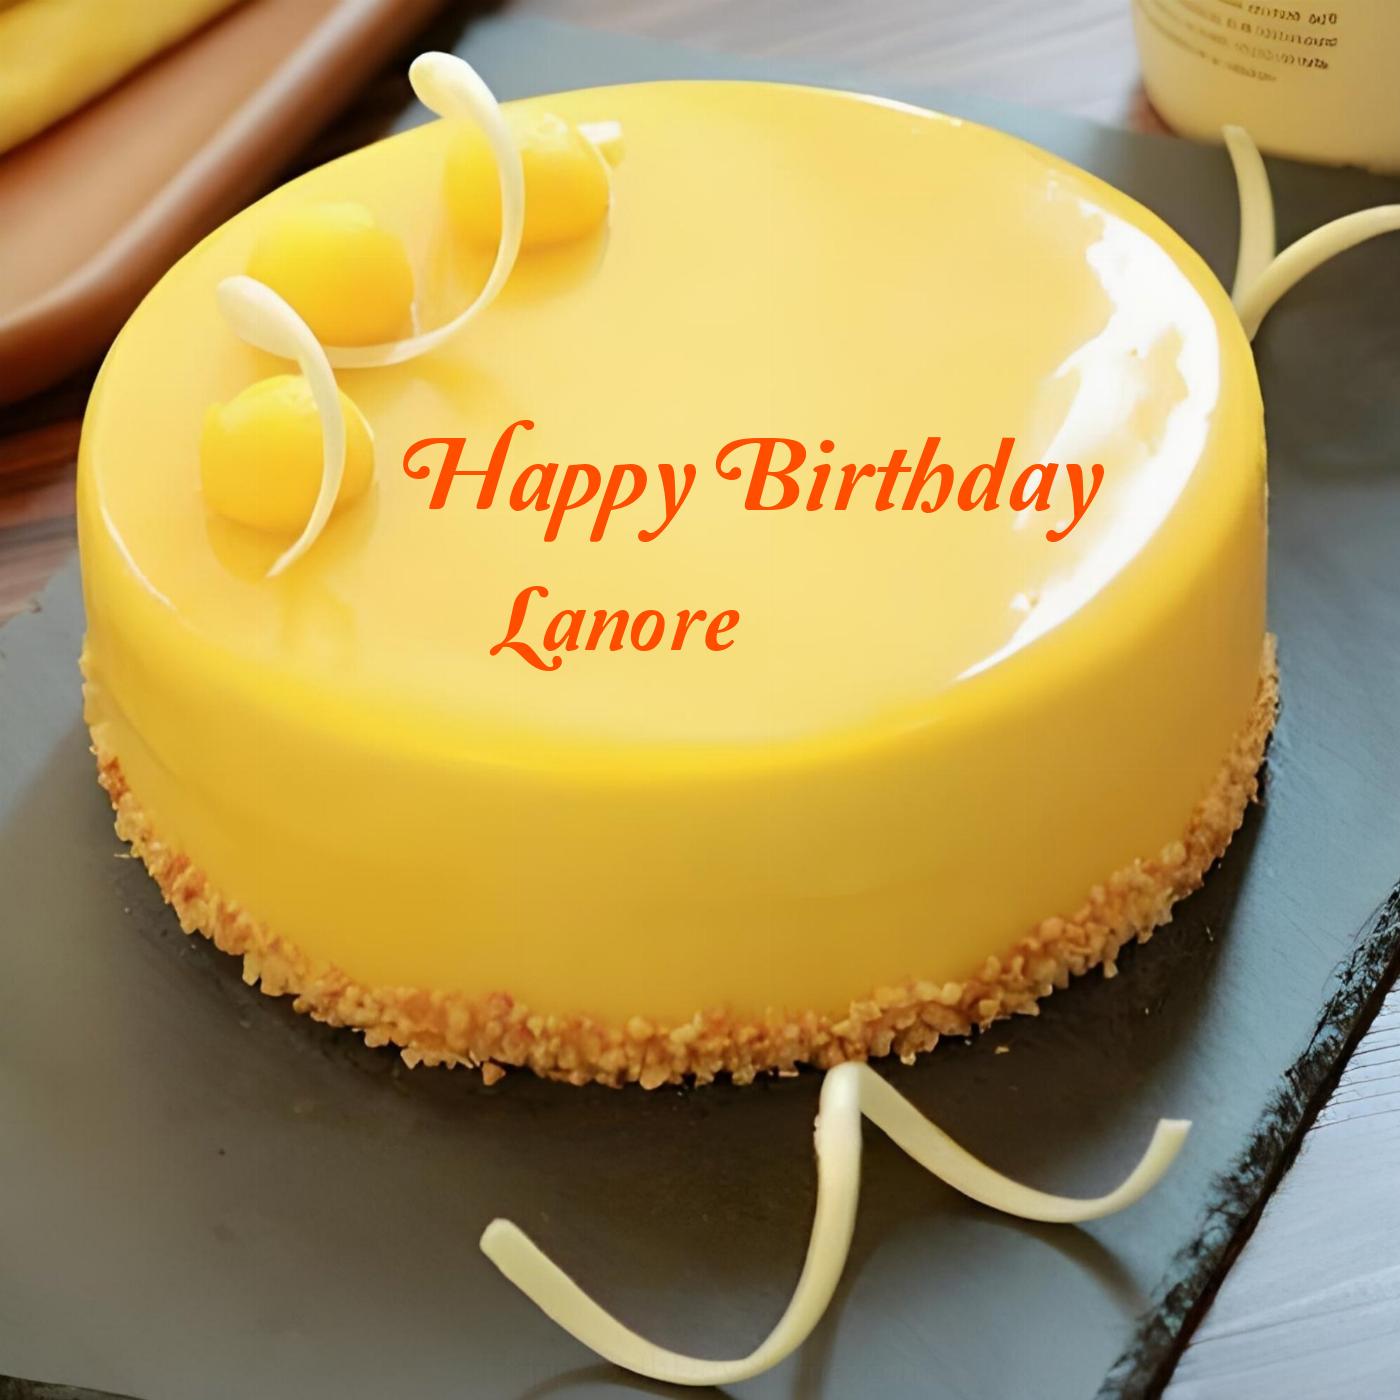 Happy Birthday Lanore Beautiful Yellow Cake